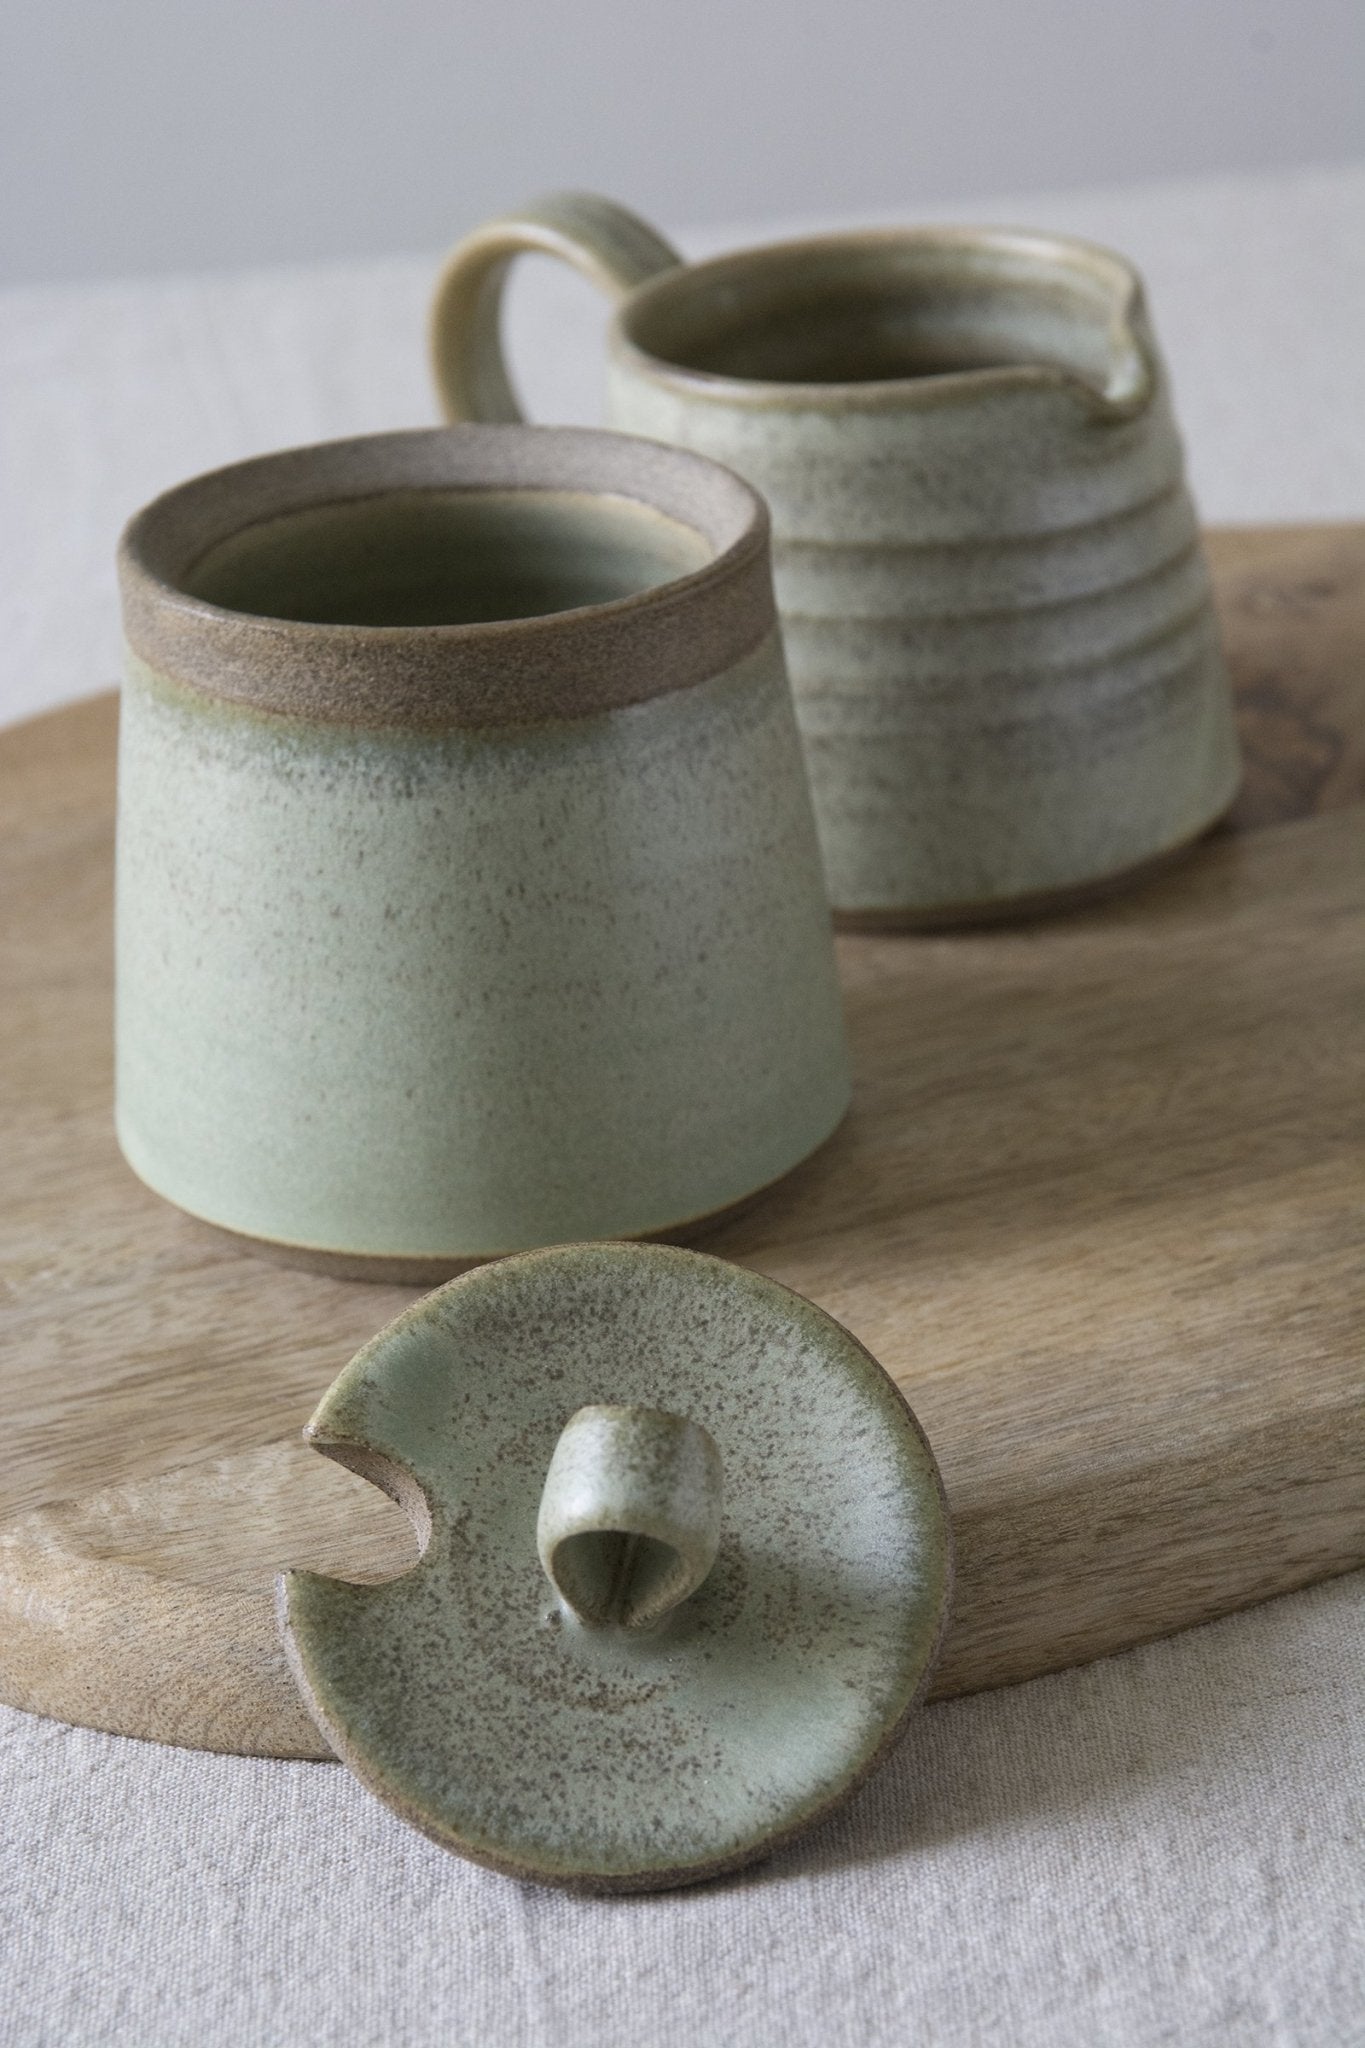 Green Sage Pottery Sugar Bowl and Creamer Set - Mad About Pottery - Sugar Bowl set